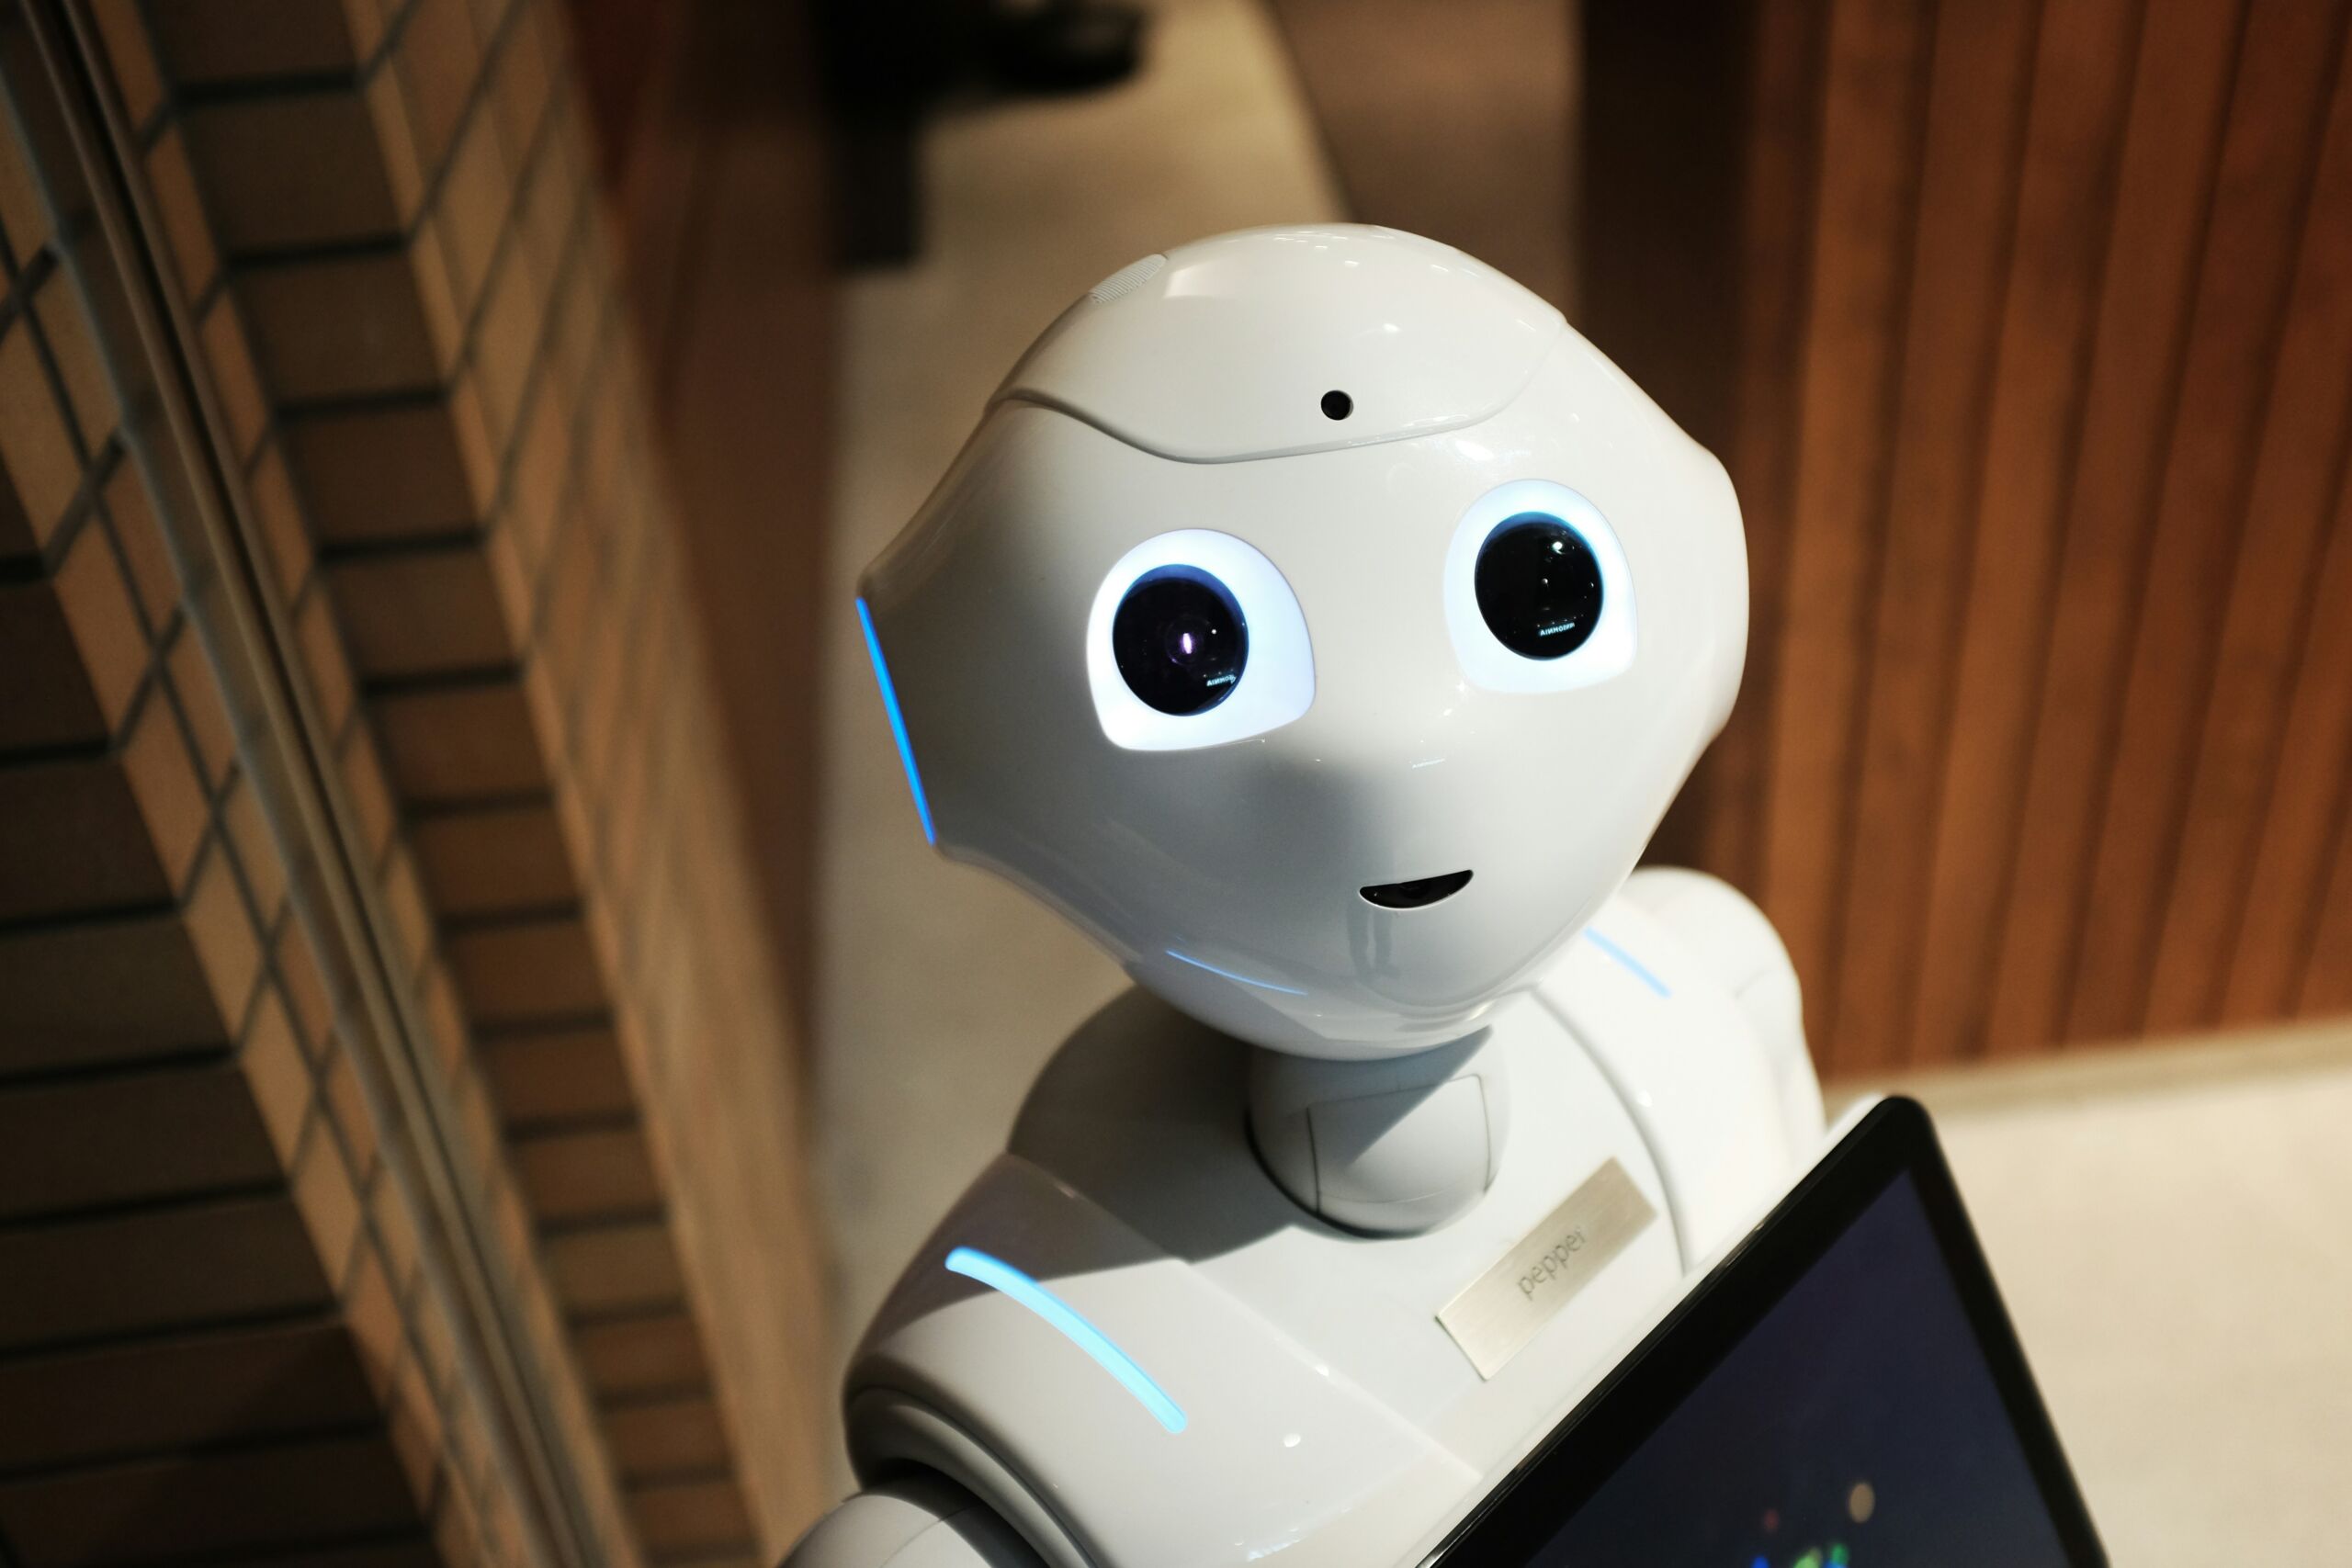 Een witte humanoïde robot met grote, ronde, blauwe ogen en een vriendelijk gezicht staat binnen in een gebouw. De robot lijkt interactief te zijn, met een display op de borst en een camera op het voorhoofd. De omgeving heeft houten en bakstenen muren.